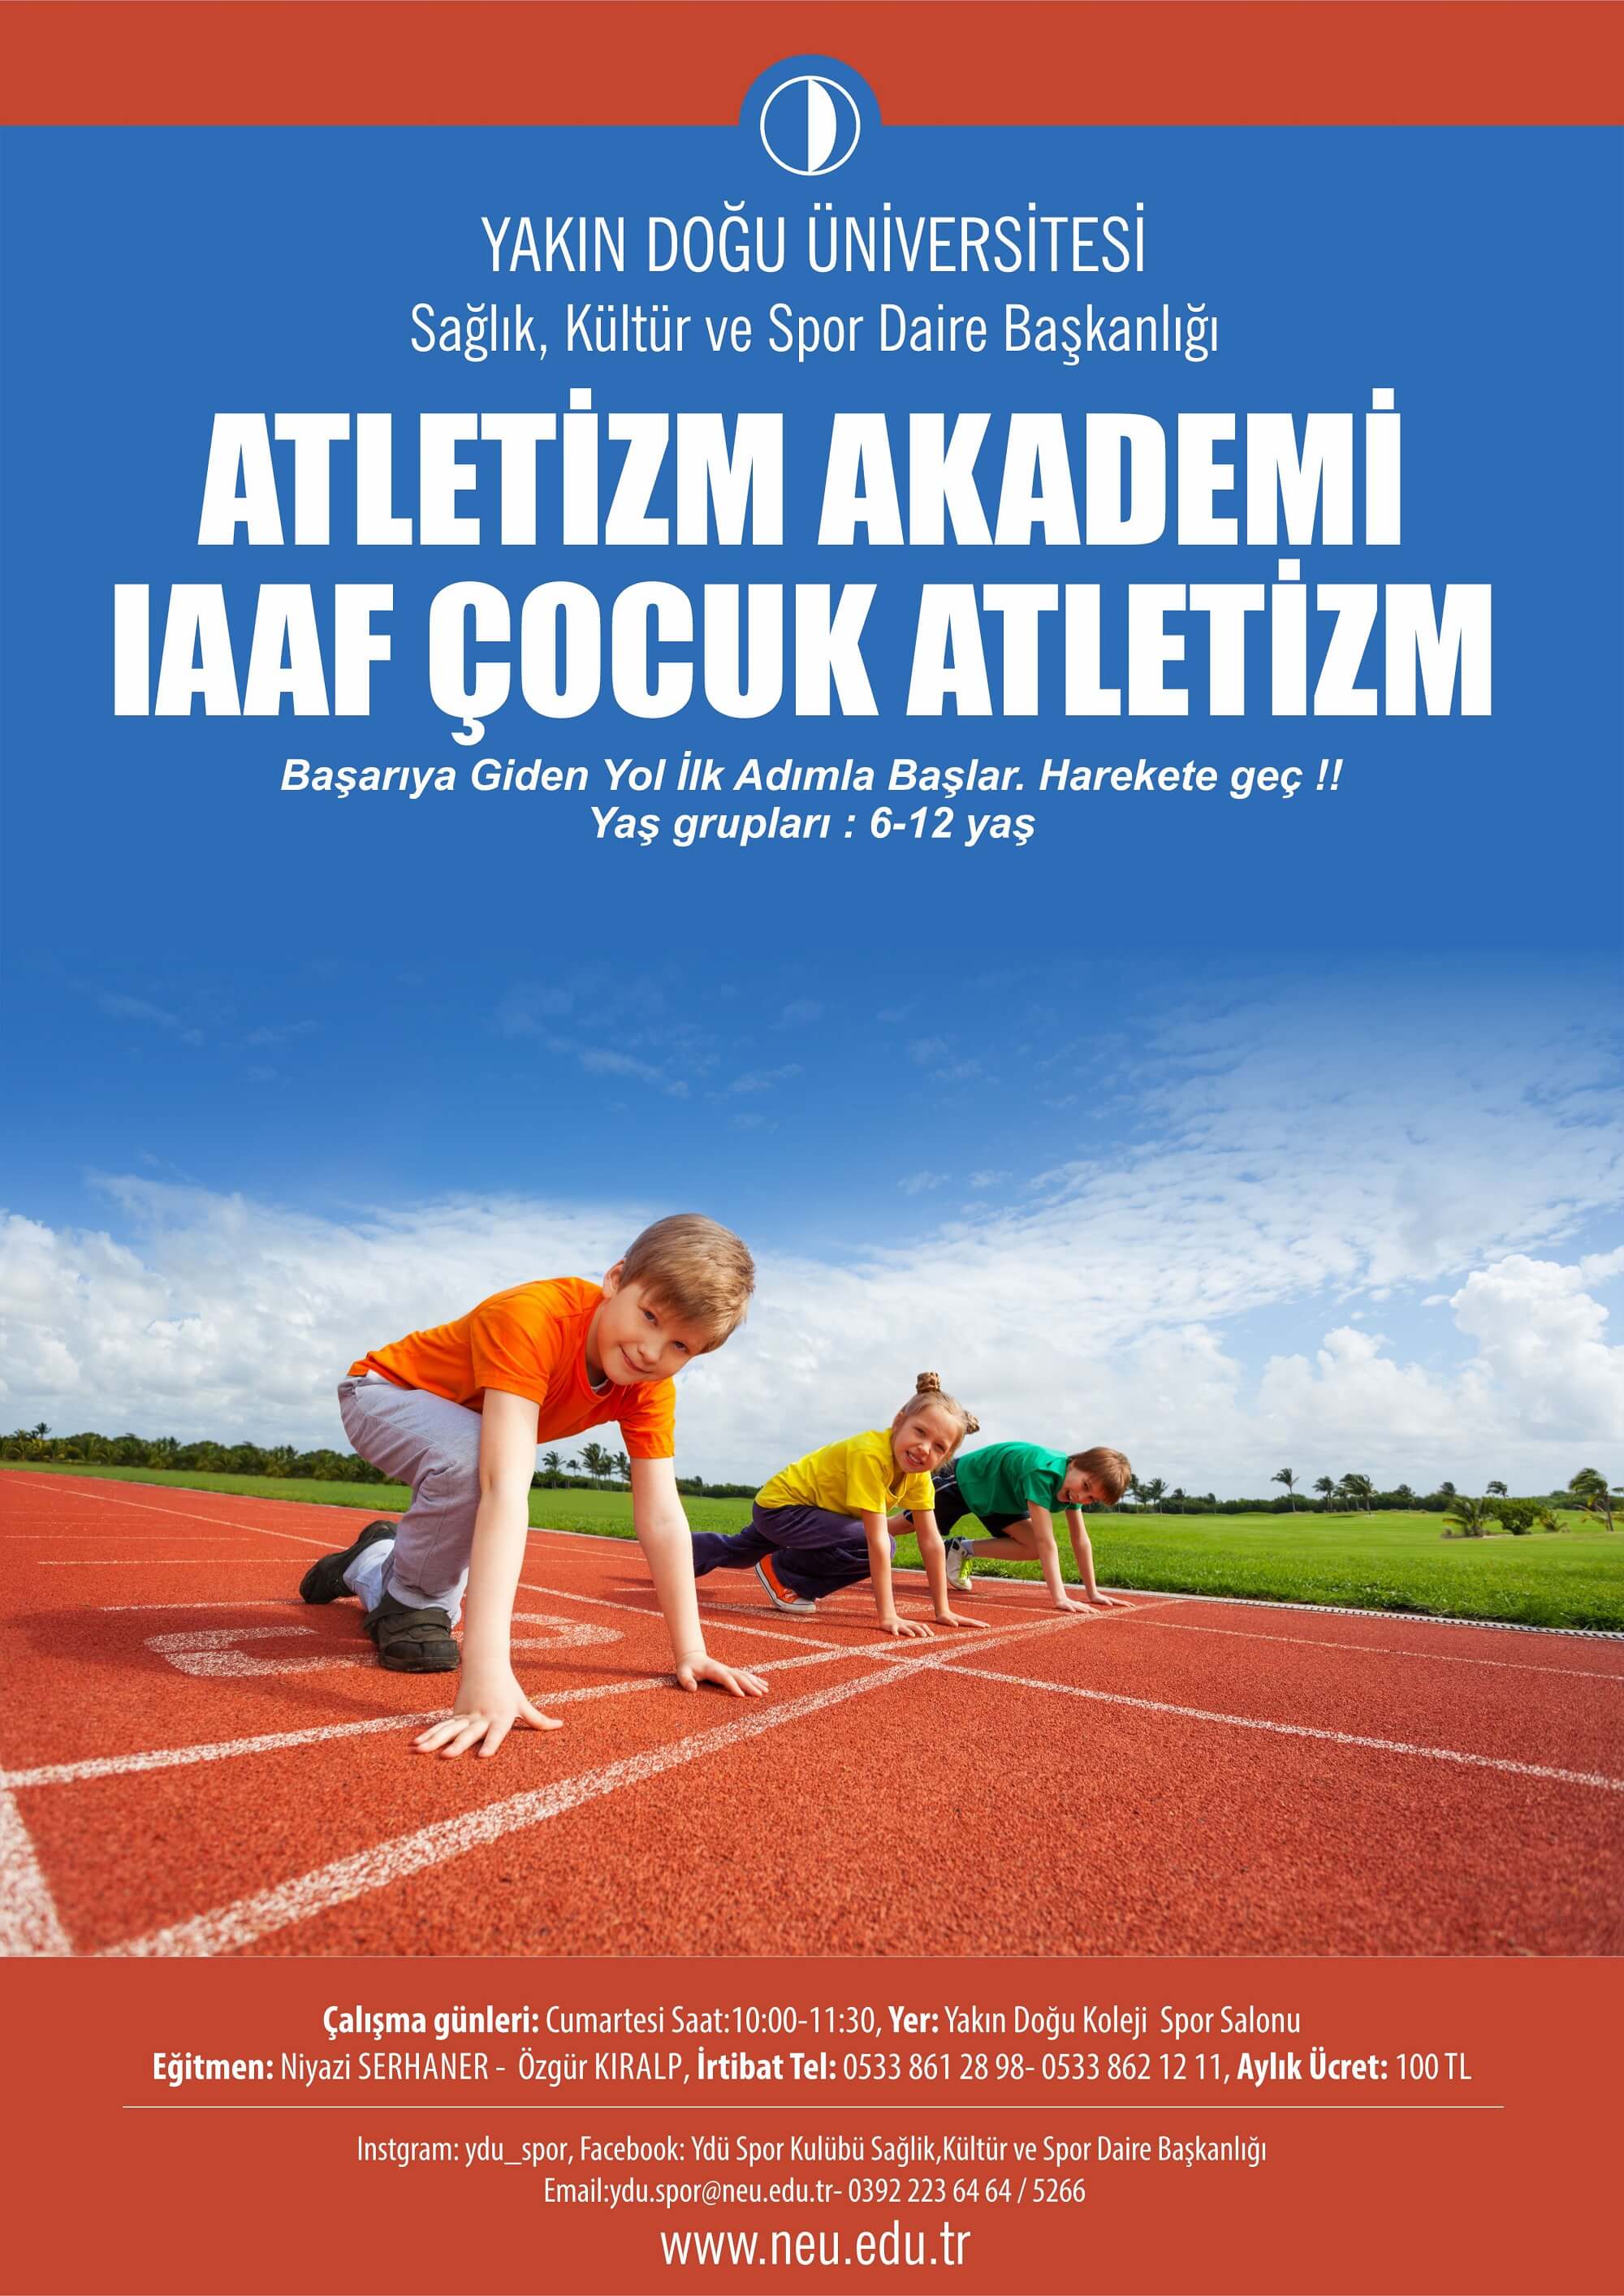 Atletizm Akademi IAAF Çocuk Atletizm